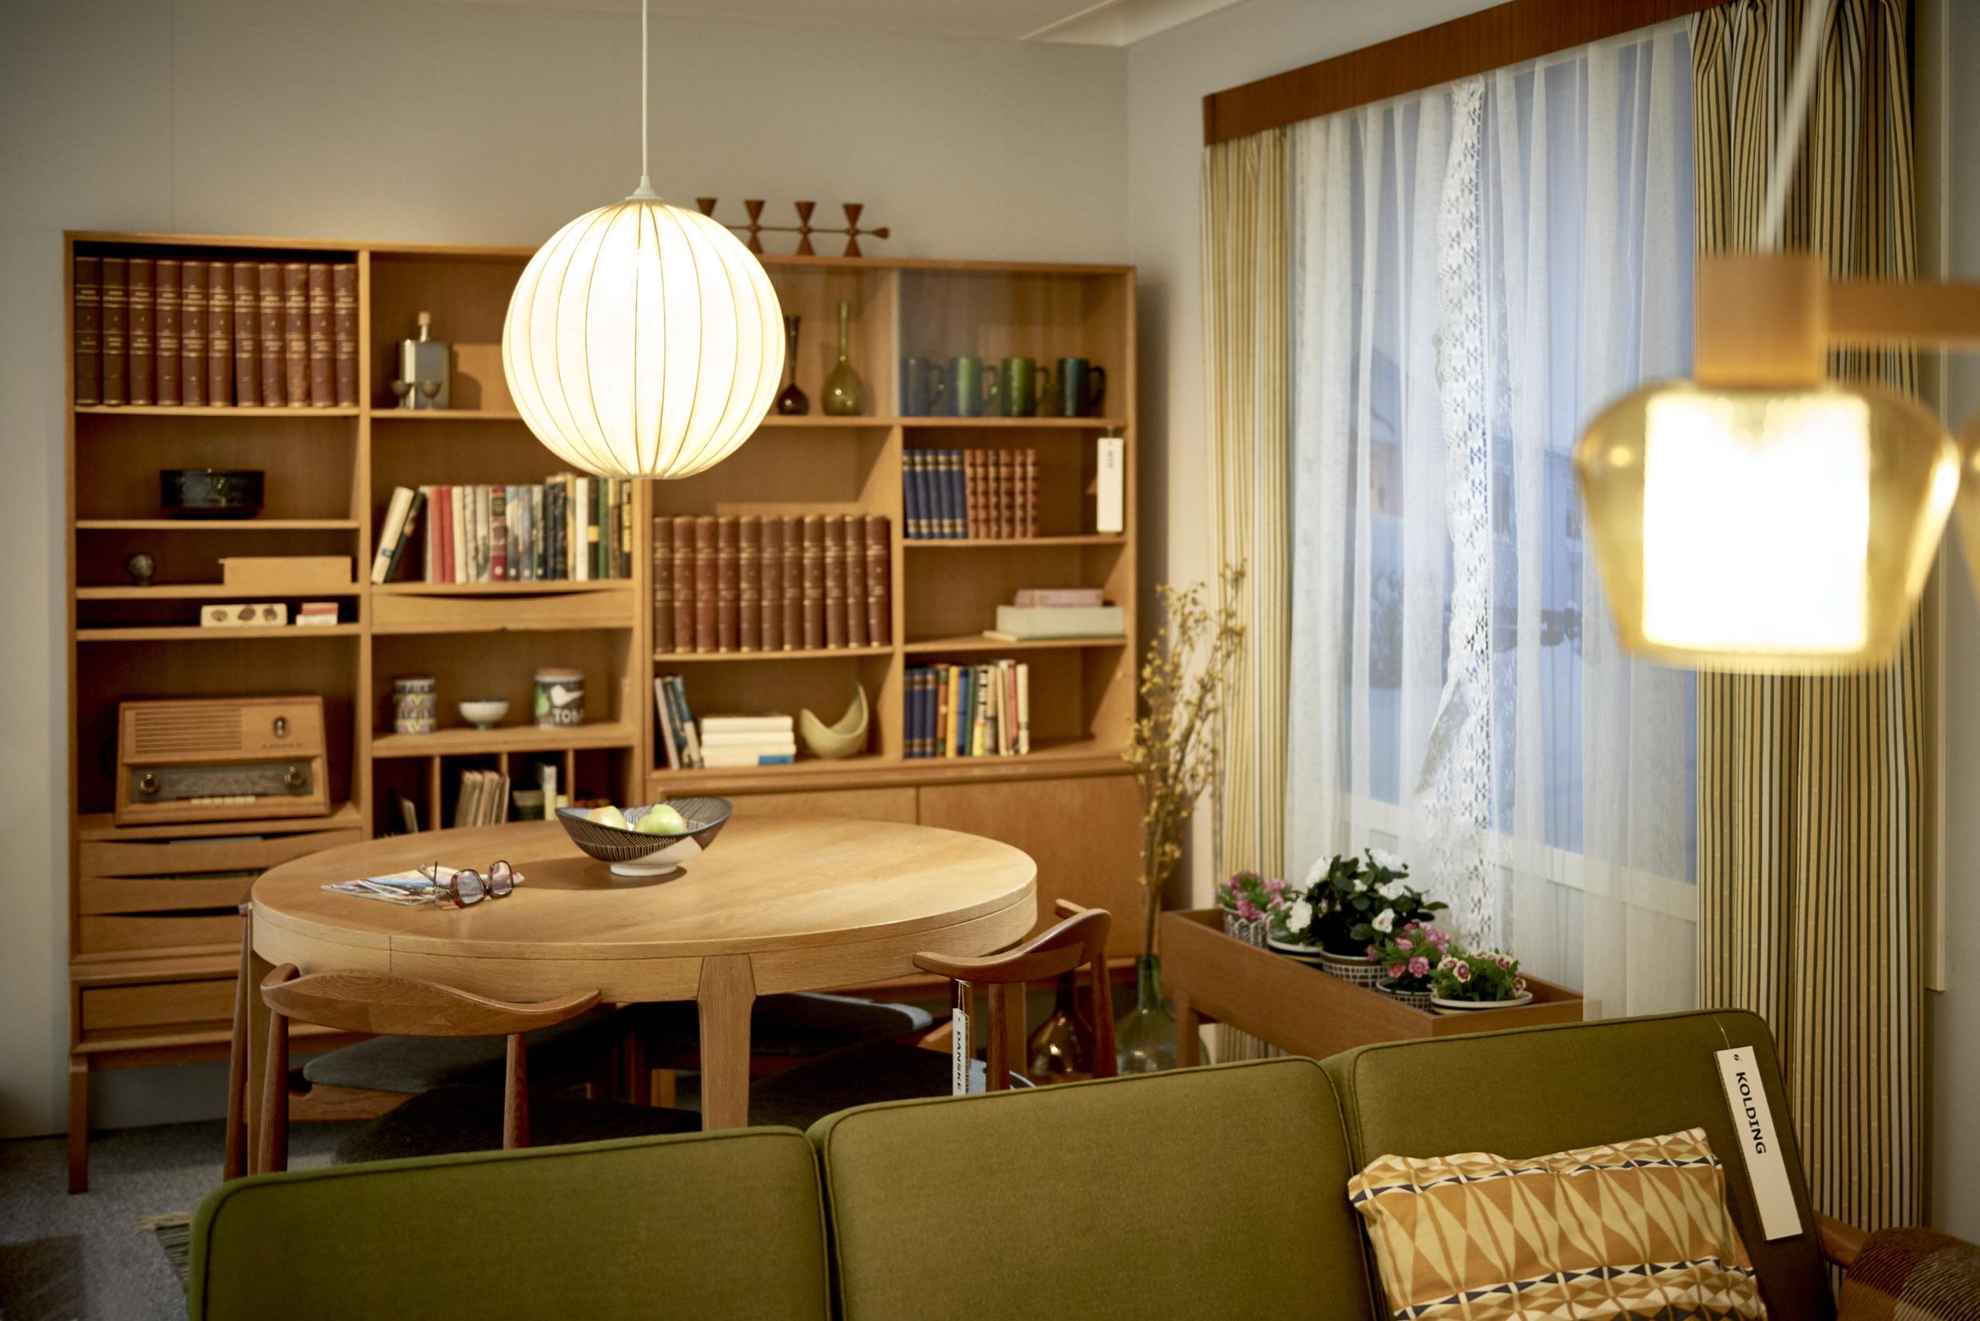 Ein altmodisches Wohnzimmer mit Schrankwand, einem runden Esstisch und im Vordergrund ein grünes Stoffsofa.